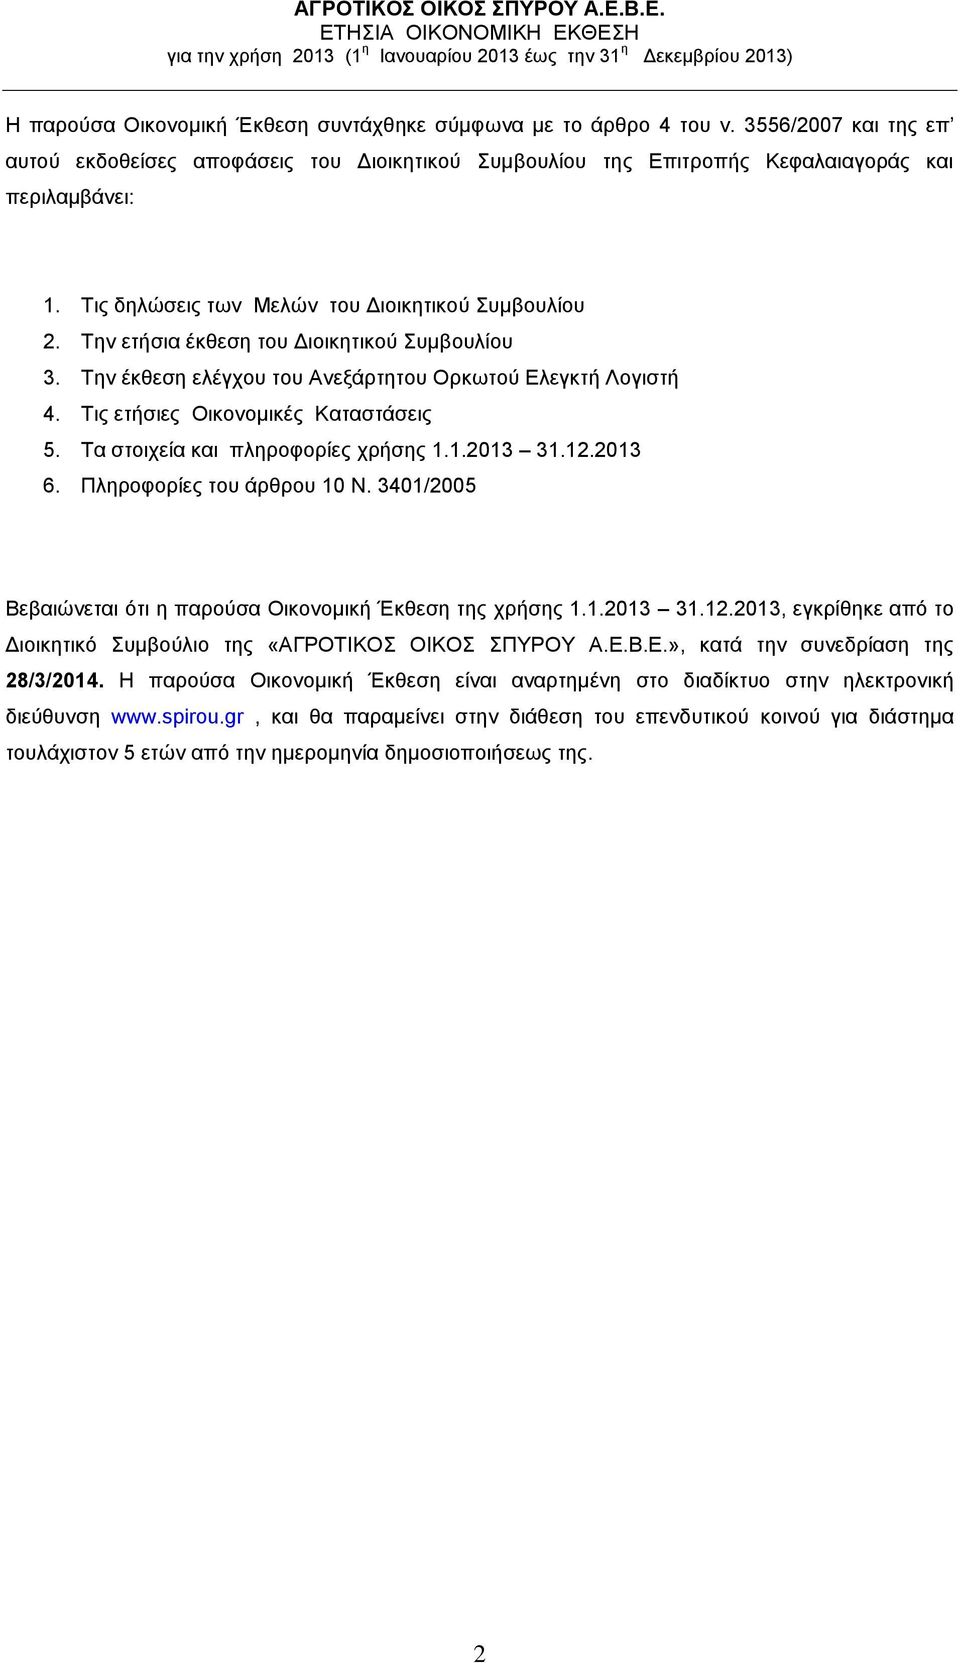 Τις ετήσιες Οικονομικές Καταστάσεις 5. Τα στοιχεία και πληροφορίες χρήσης 1.1.2013 31.12.2013 6. Πληροφορίες του άρθρου 10 Ν. 3401/2005 Βεβαιώνεται ότι η παρούσα Οικονομική Έκθεση της χρήσης 1.1.2013 31.12.2013, εγκρίθηκε από το Διοικητικό Συμβούλιο της «ΑΓΡΟΤΙΚΟΣ ΟΙΚΟΣ ΣΠΥΡΟΥ Α.